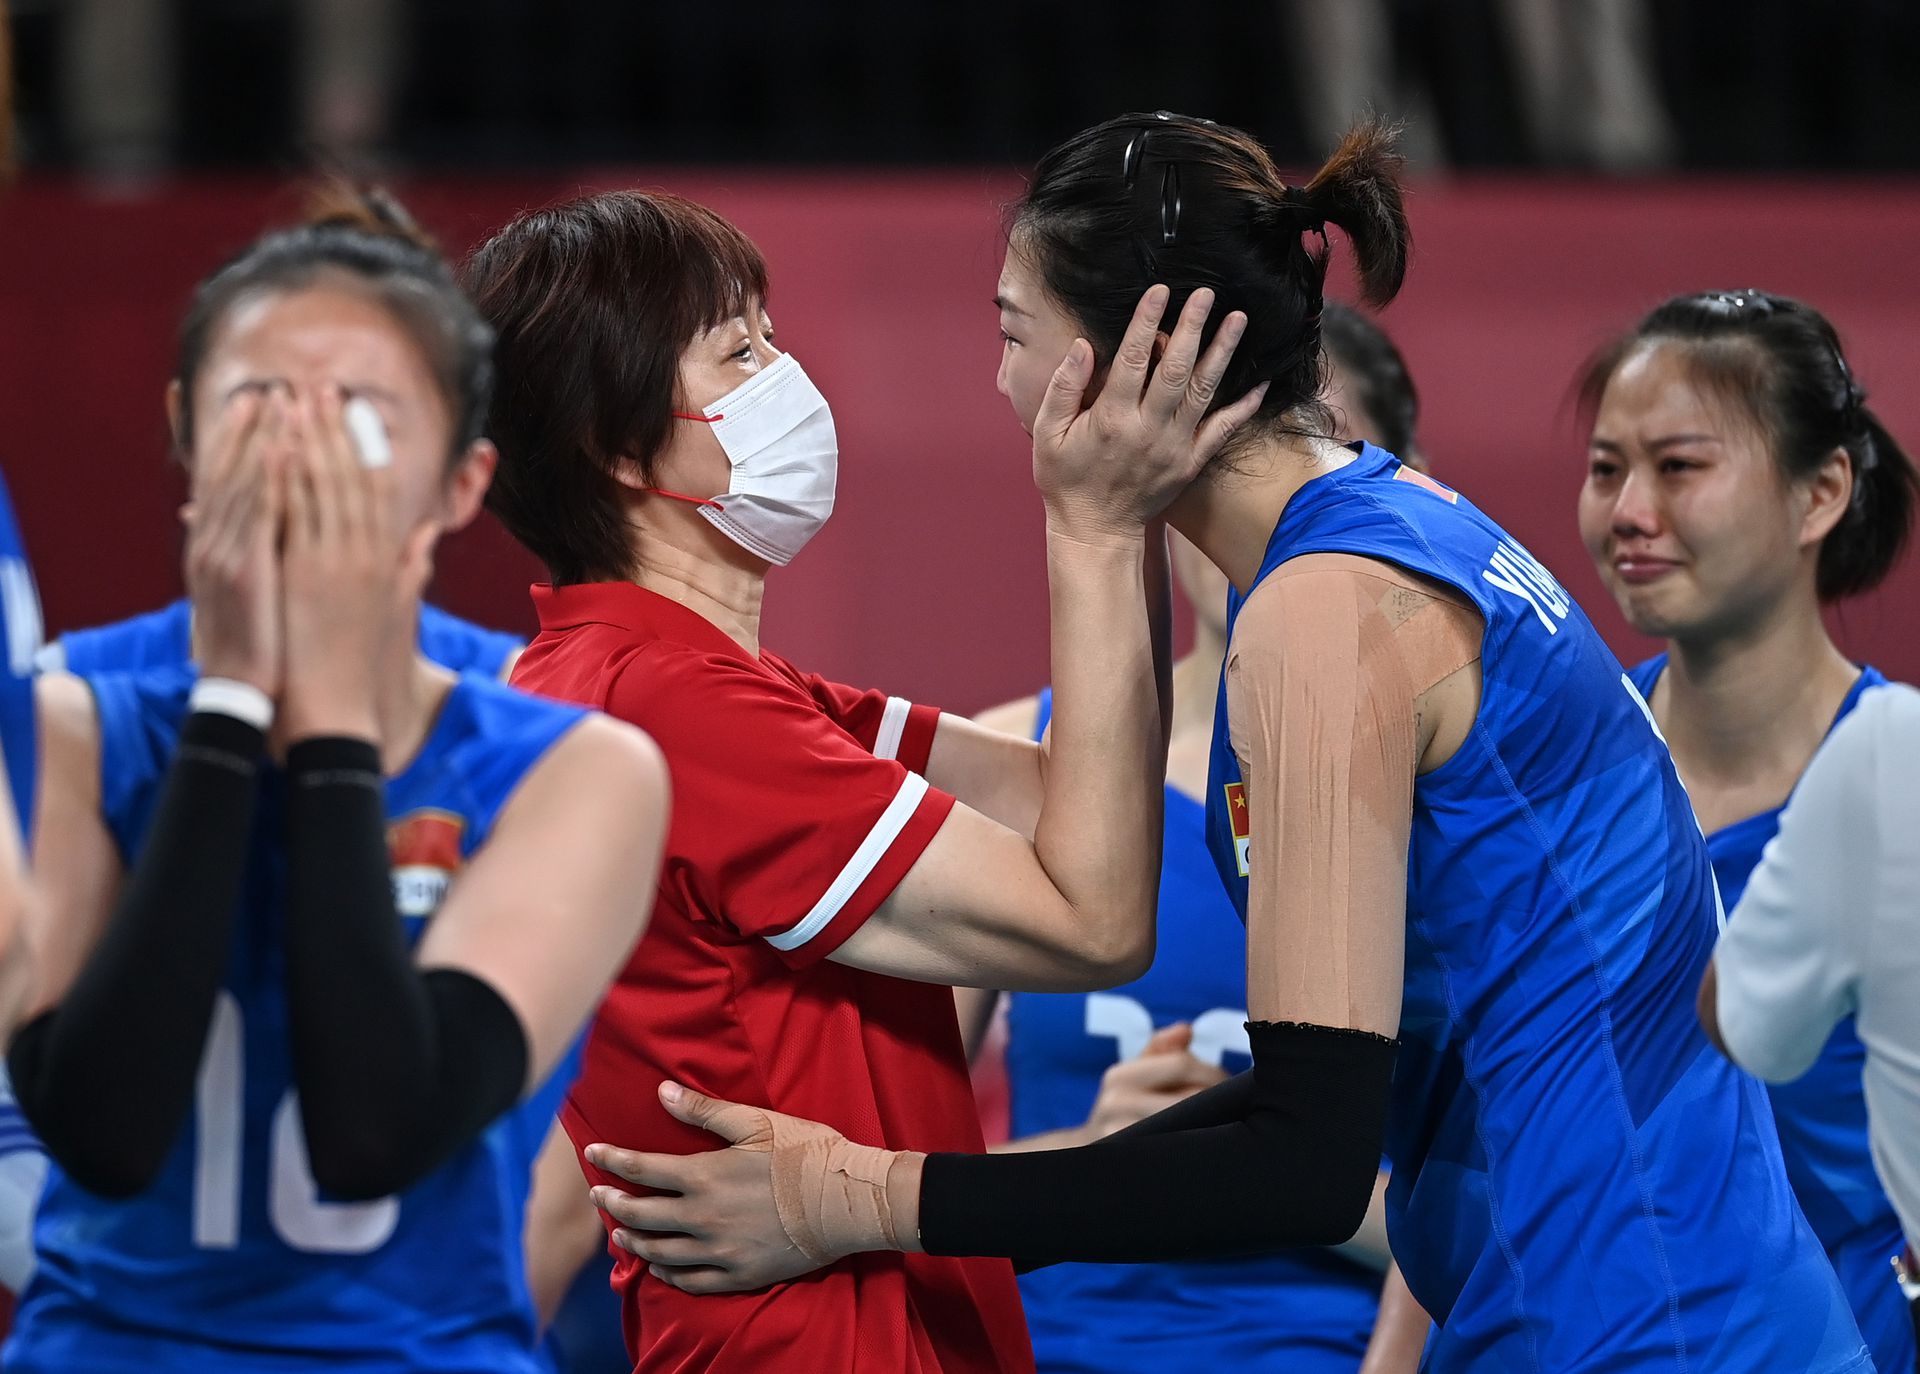 北京時間8月2日，東京奧運會女排小組賽末輪，中國女排對陣阿根廷女排，兩隊均已提前出局，本場女排姑娘們為榮譽而戰!本場也是中國女排功勳主帥郎平指導的謝幕戰，自2013年擔任女排國家隊主教練以來，率領中國女排獲得2屆女排世界盃冠軍，1次奧運會冠軍，戰功卓著戰績輝煌。郎平指導坦言做出離開的原因之一是自己需要休息，同時也需給年輕教練機會。

中國女排以3-0戰勝阿根廷，以2勝3負結束東京奧運之旅，用勝利告別三冠功勳主帥郎平!新華社圖片